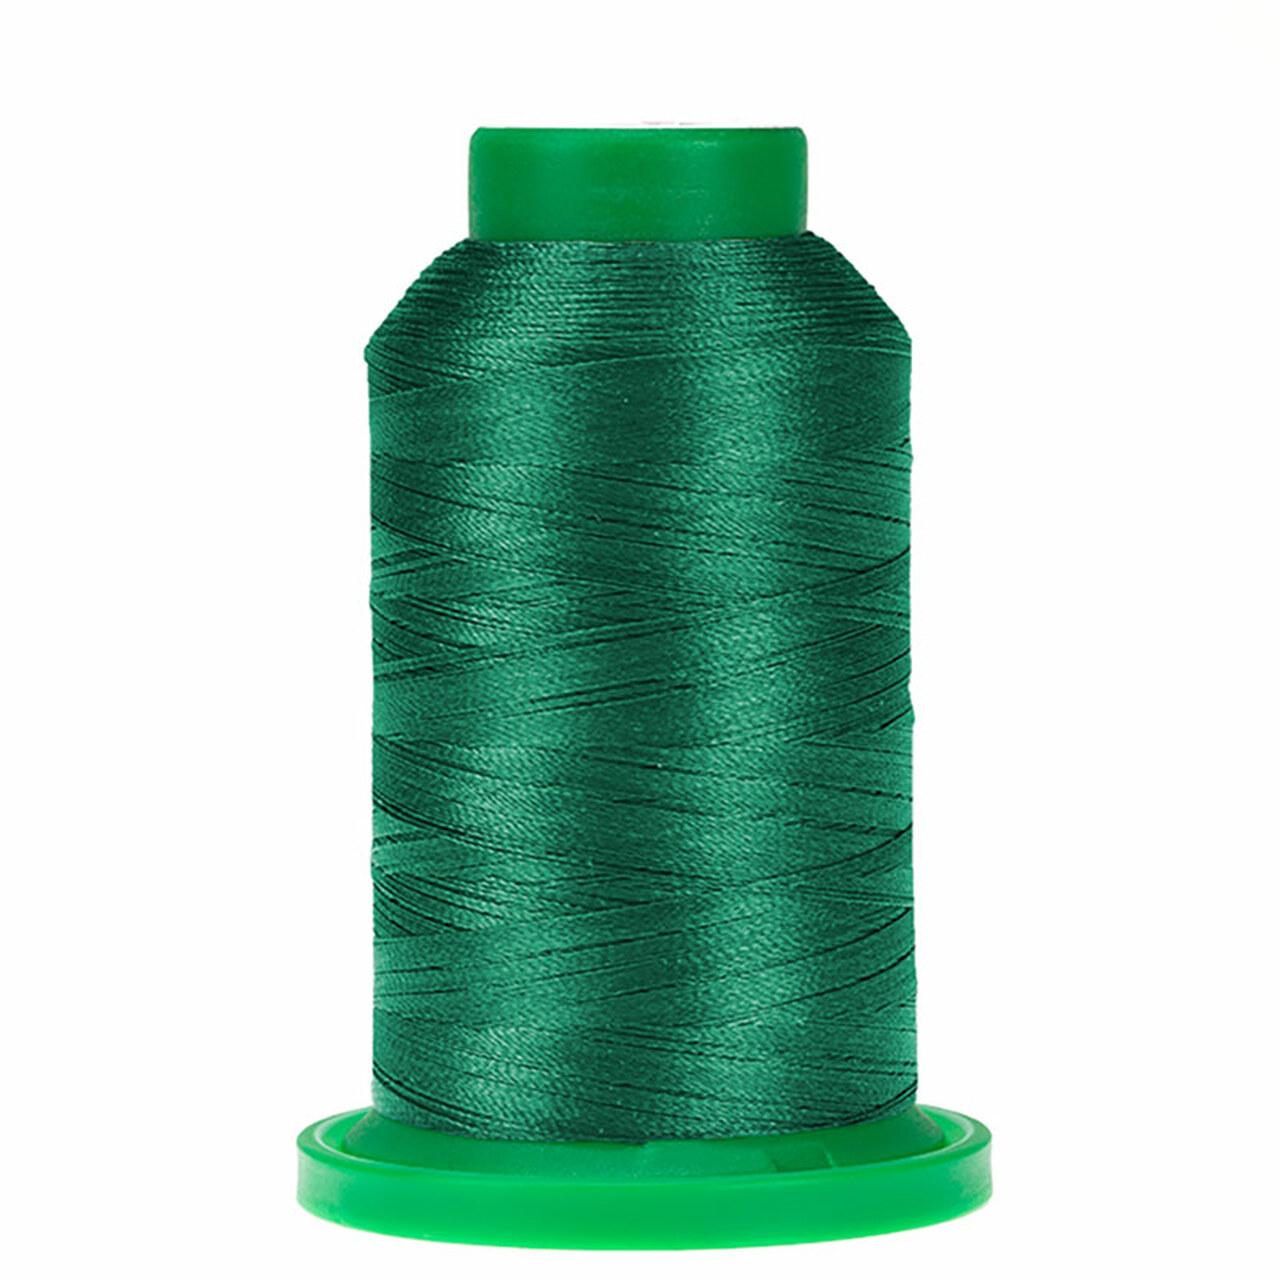 Thread - Isacord - Green - 2922-5100